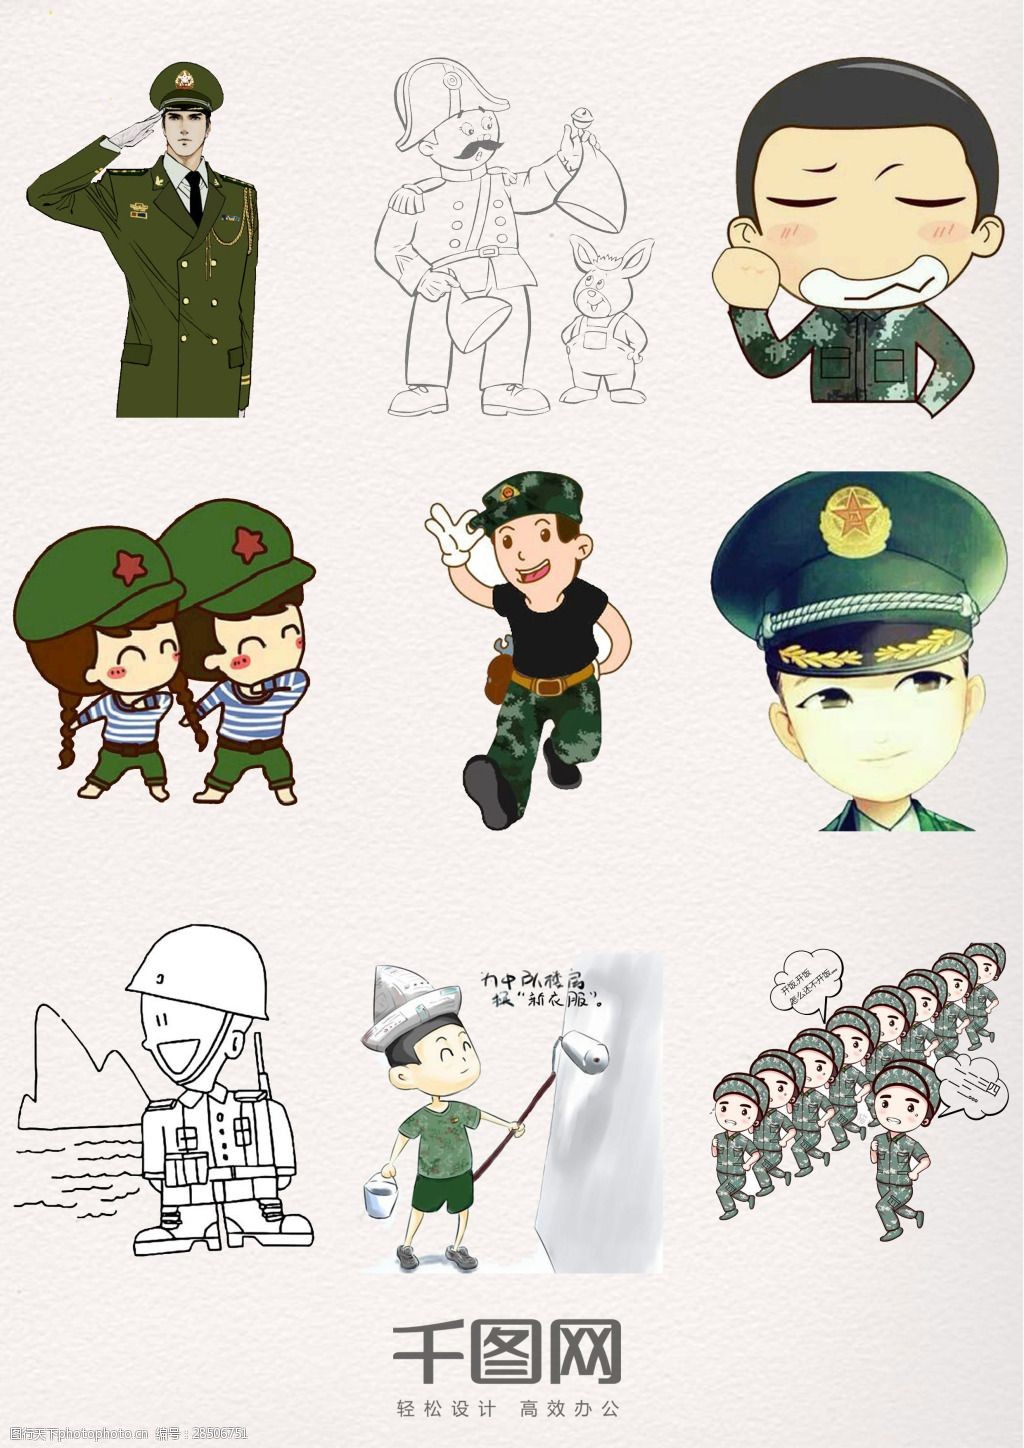 关键词:军人卡通形象素材 军人 卡通形象 退伍军人节 漫画素材 创意